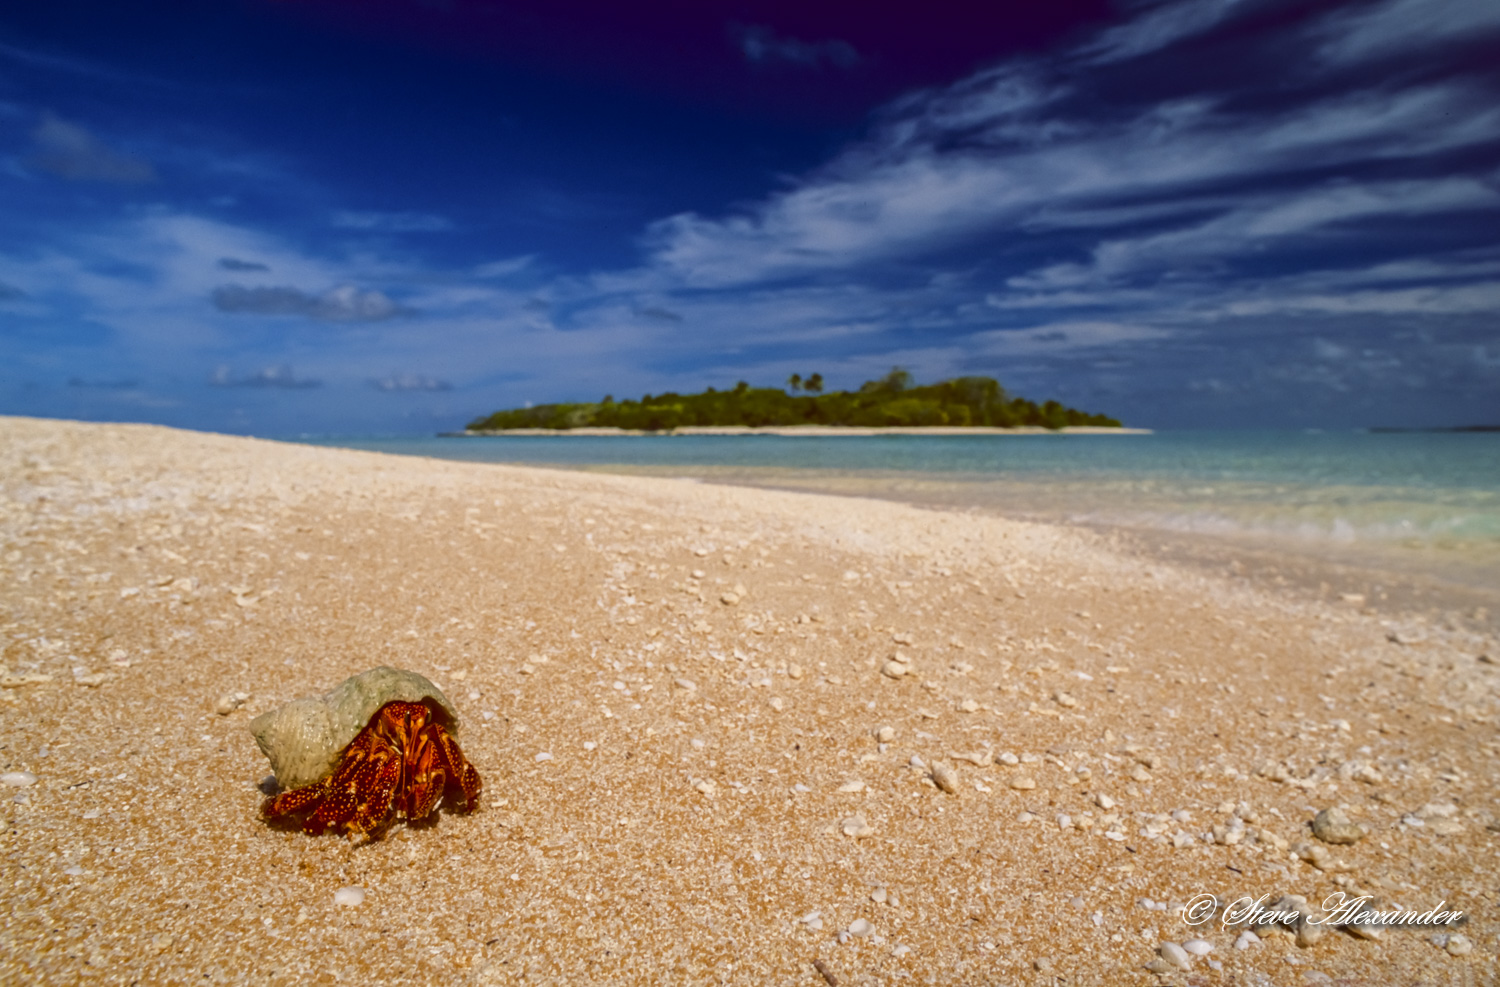 Hermit Crab on Desert Island